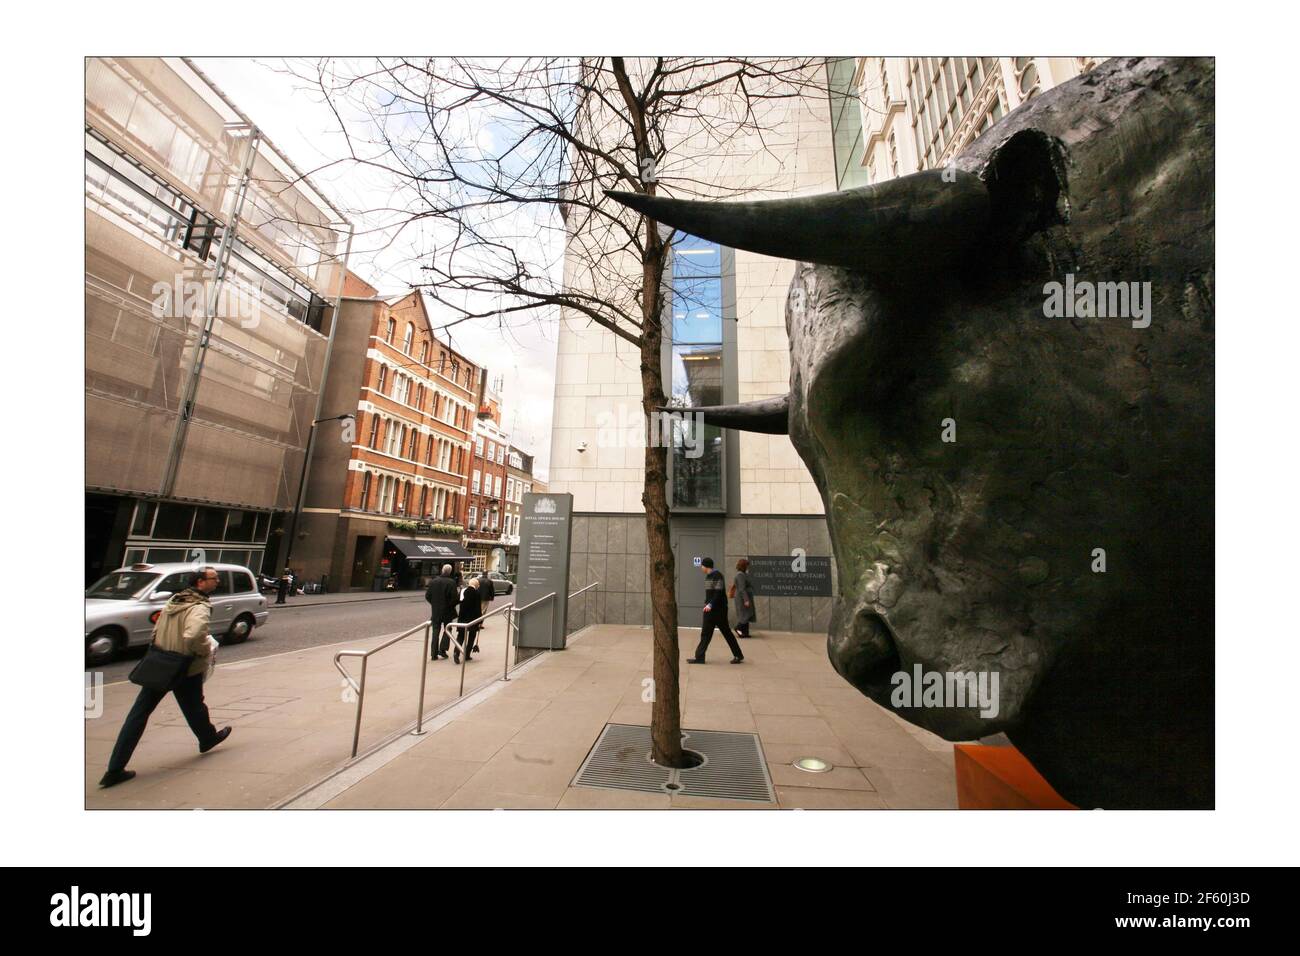 Una scultura di un minotauro a Covent Garden a Londra 8 aprile 2008. La scoperta della scultura è in coincidenza con l'ultima opera di Harrison Birtwistle, "The Minotaur". Fotografia di David Sandison the Independent Foto Stock